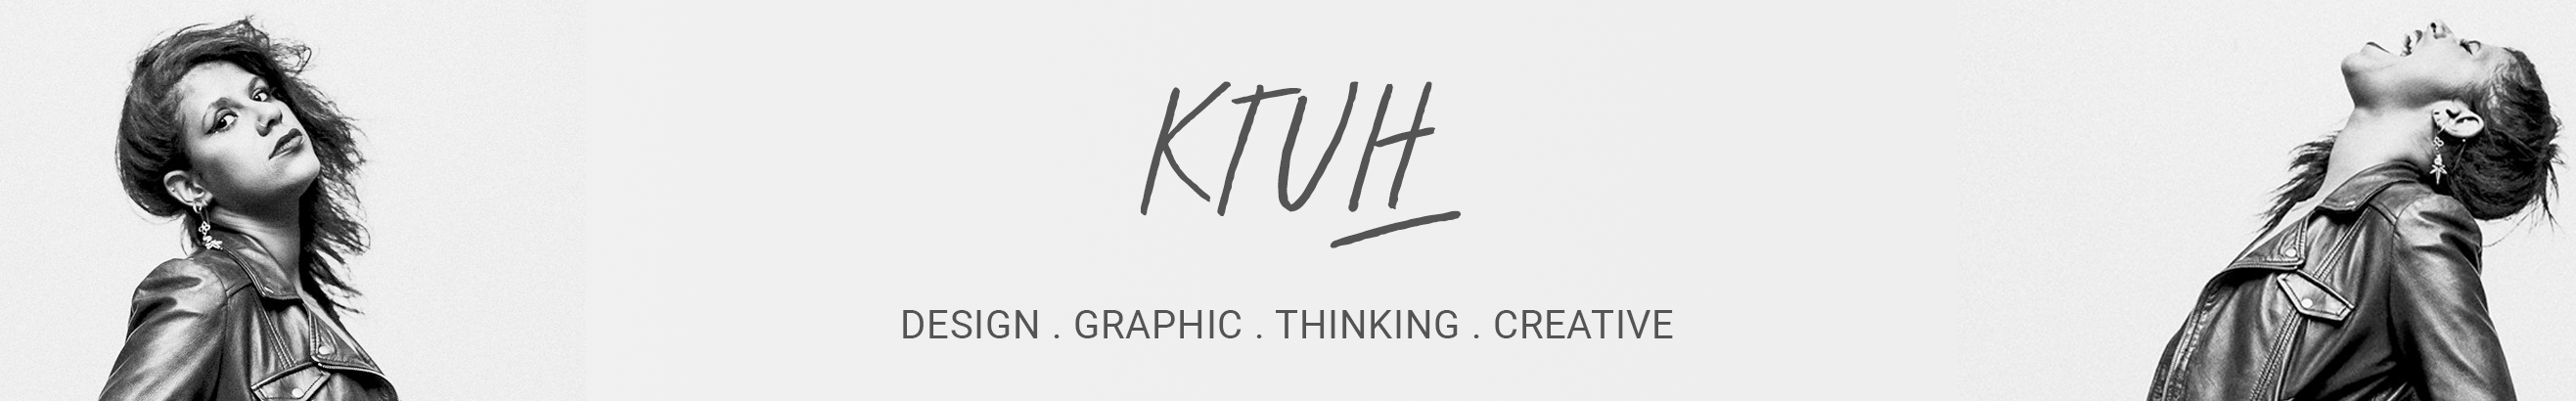 Profil-Banner von Rafael Ktuh